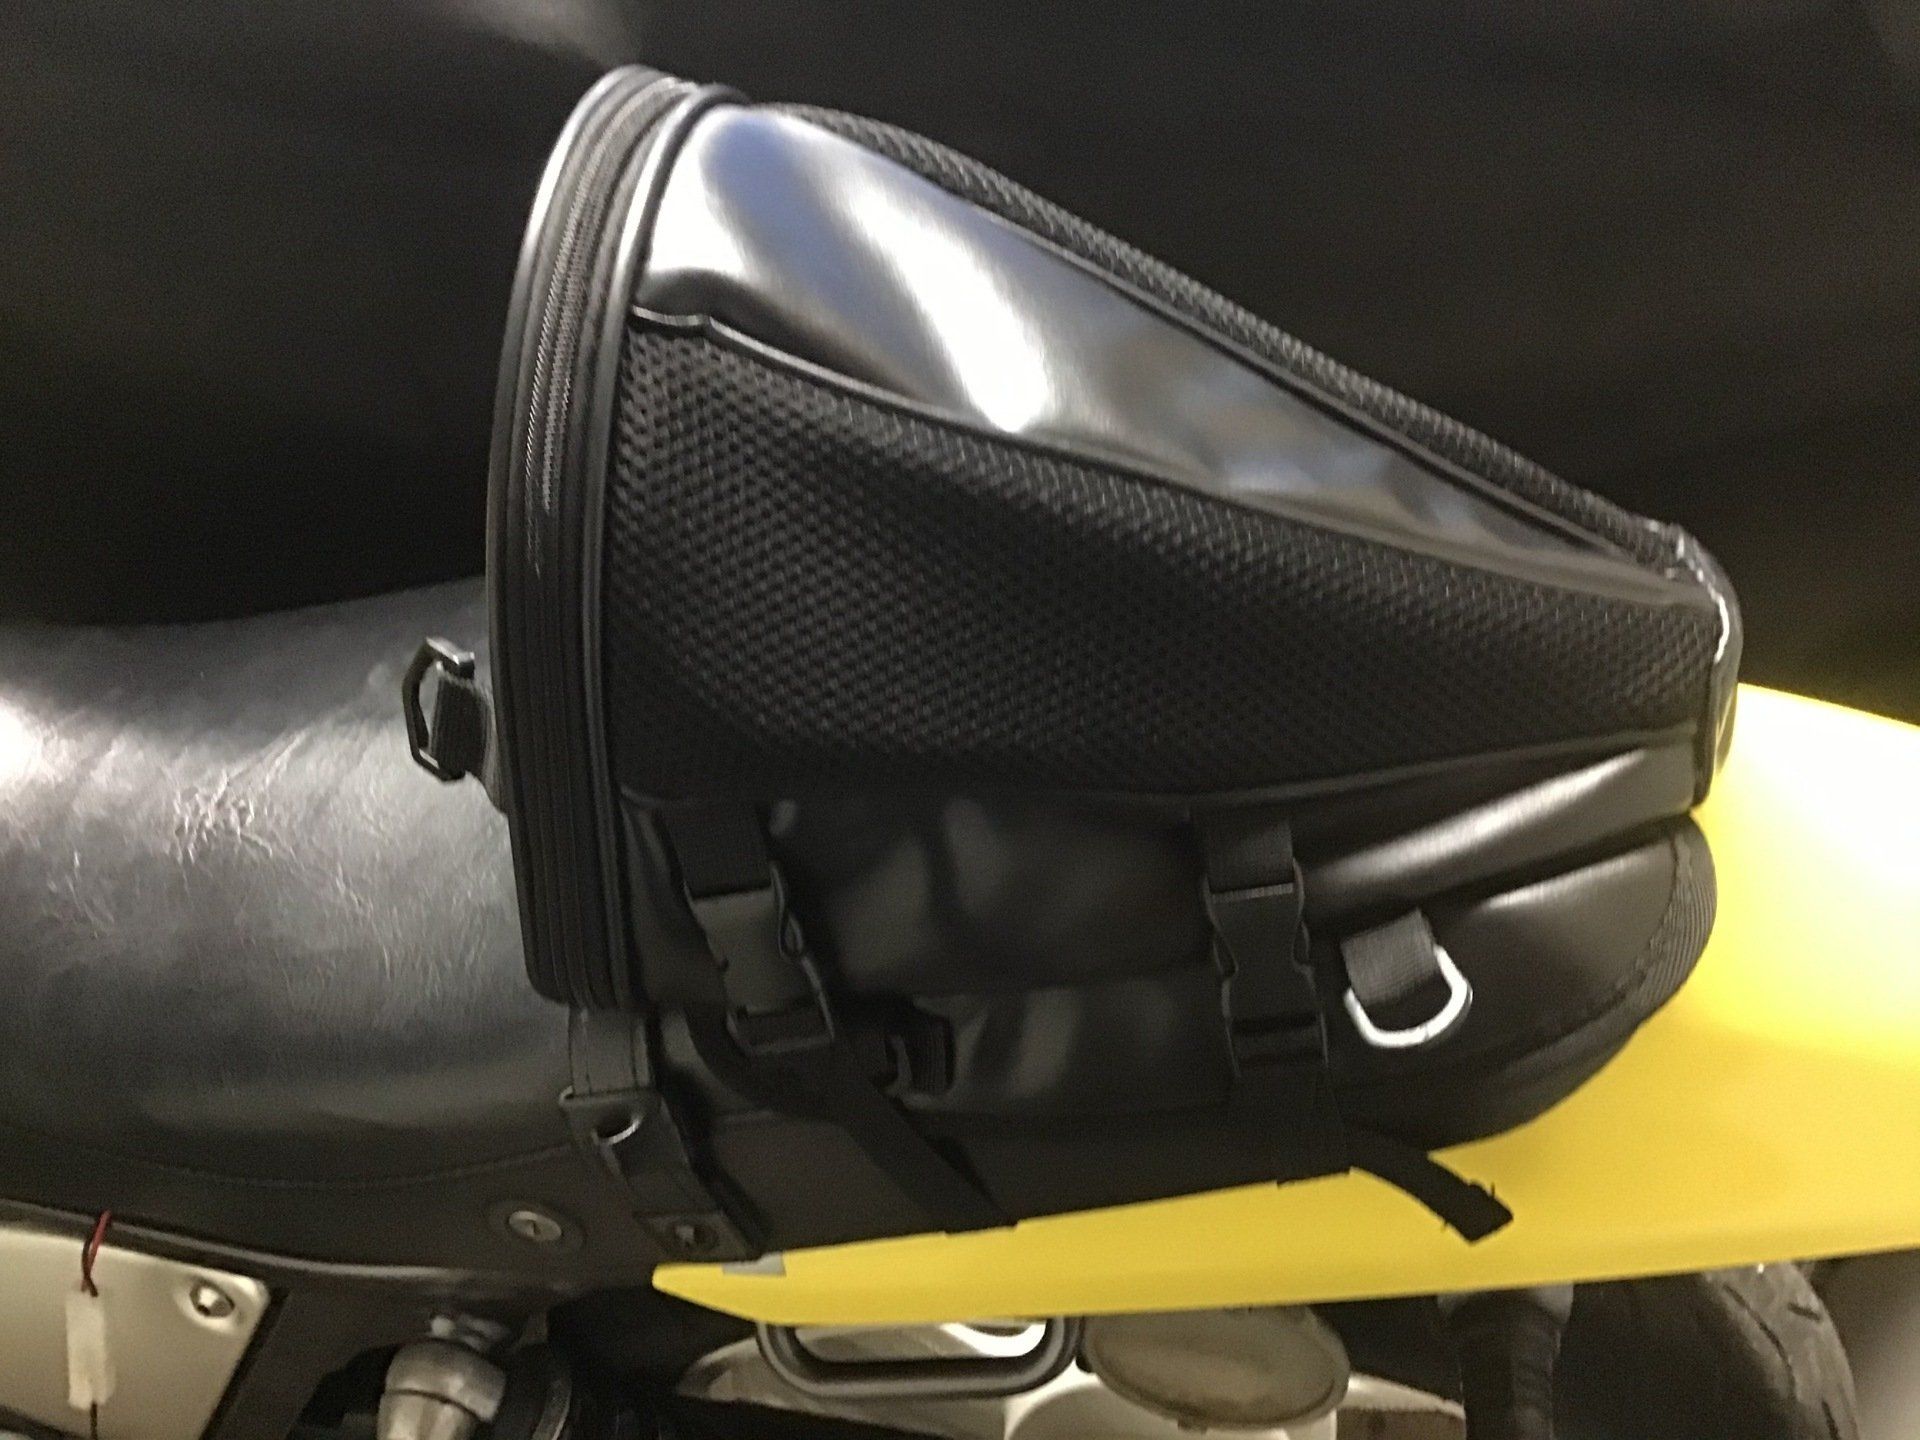 Cheap Ebay tail bag mounted on Yamaha SRX600